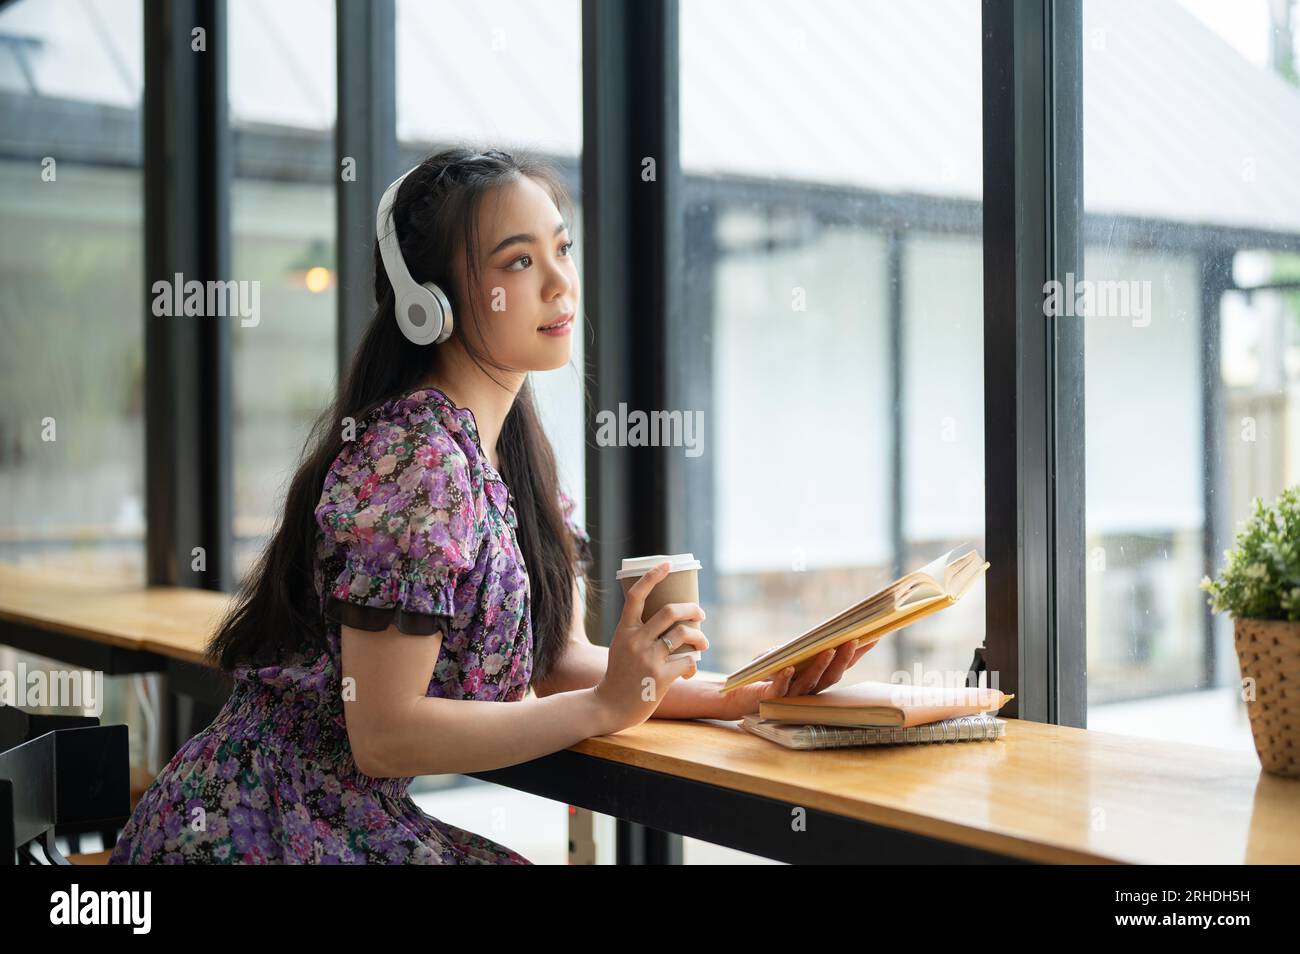 Eine schöne und charmante junge asiatische Frau in einem süßen Kleid träumt davon, während sie Musik auf ihren Kopfhörern hört und ein Buch in einem Café liest. Stockfoto